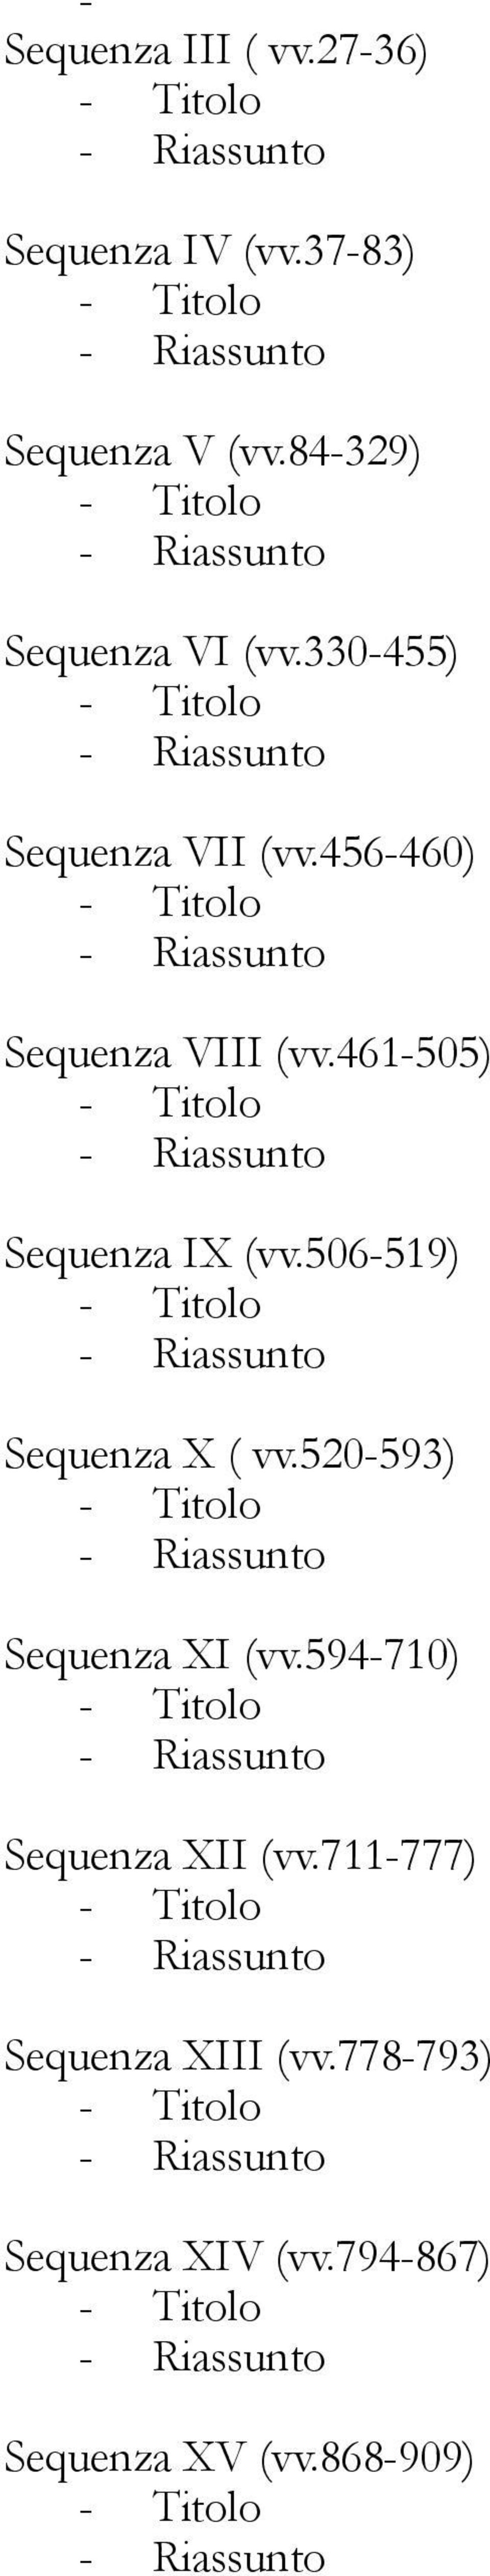 461-505) Sequenza IX (vv.506-519) Sequenza X ( vv.520-593) Sequenza XI (vv.